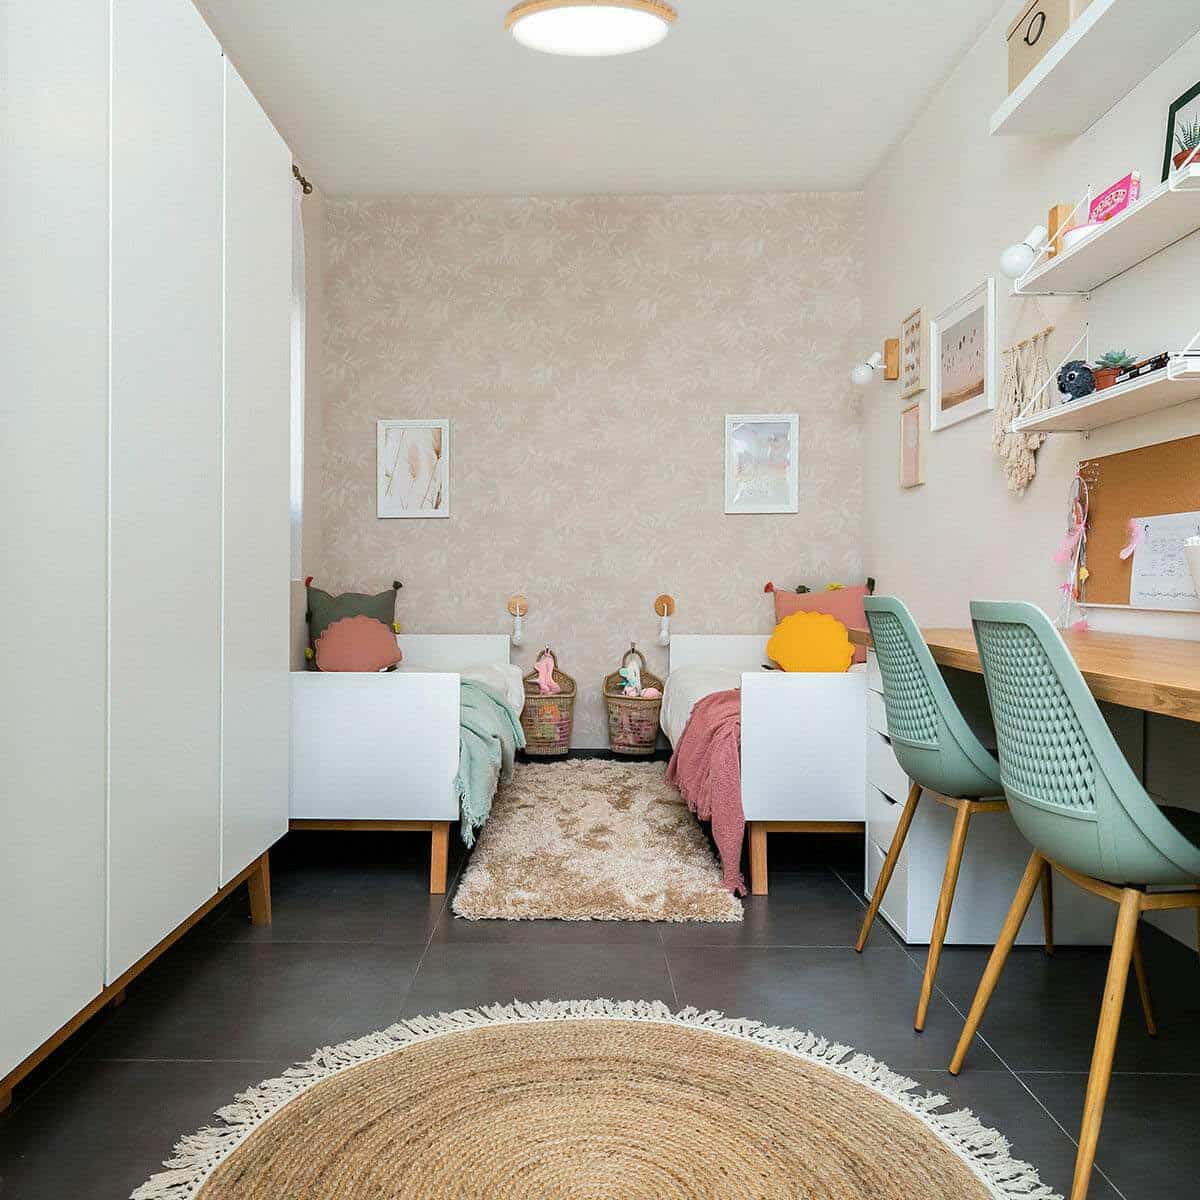 שטיח תמר אריגה שטוחה 04 בז' עגול עם פרנזים | השטיח האדום | עיצוב: אורית וילקר, צילום: המל צילום